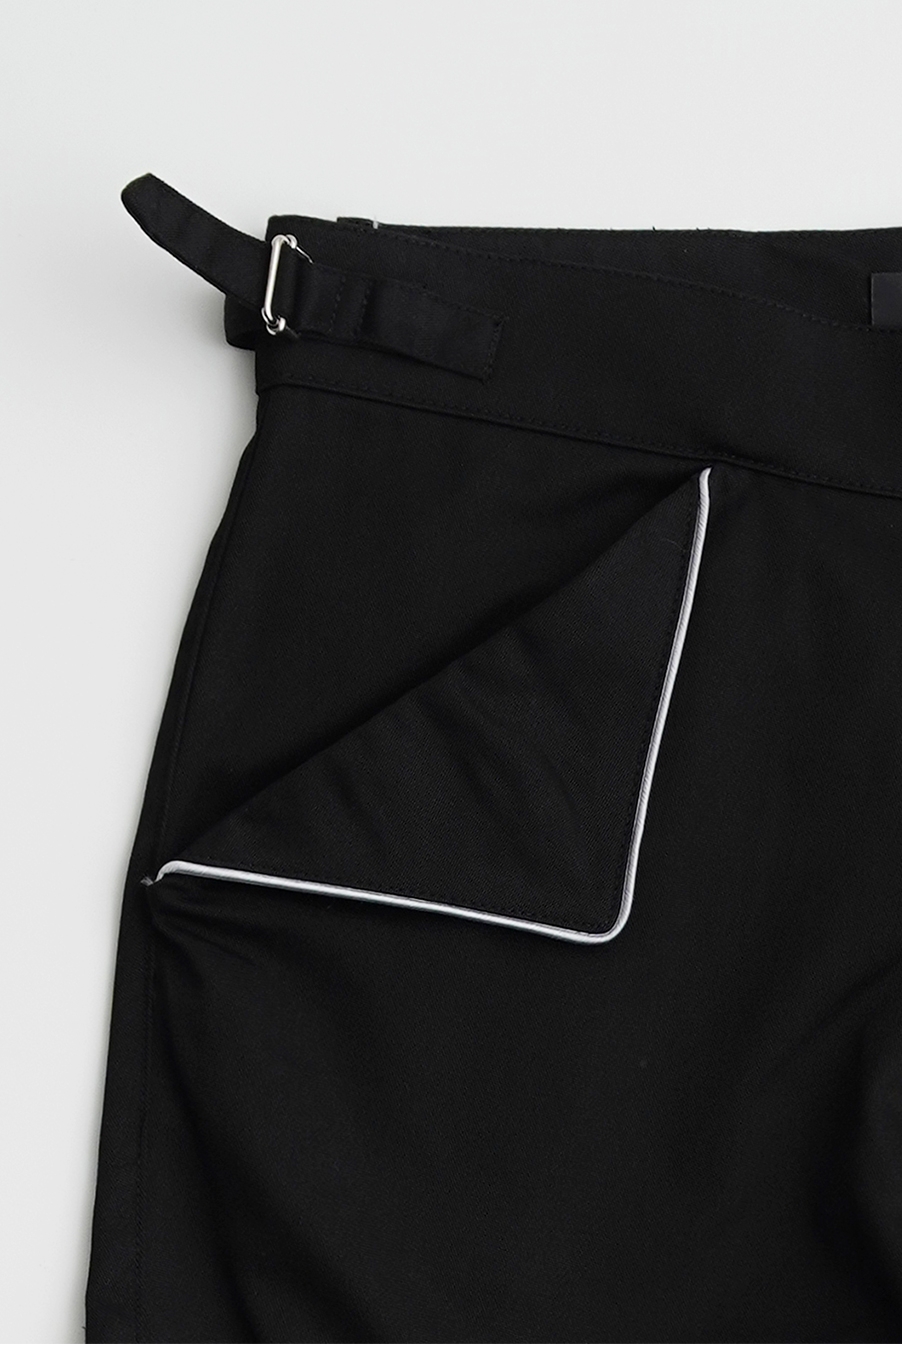 Snap zipper pocket pants - Black